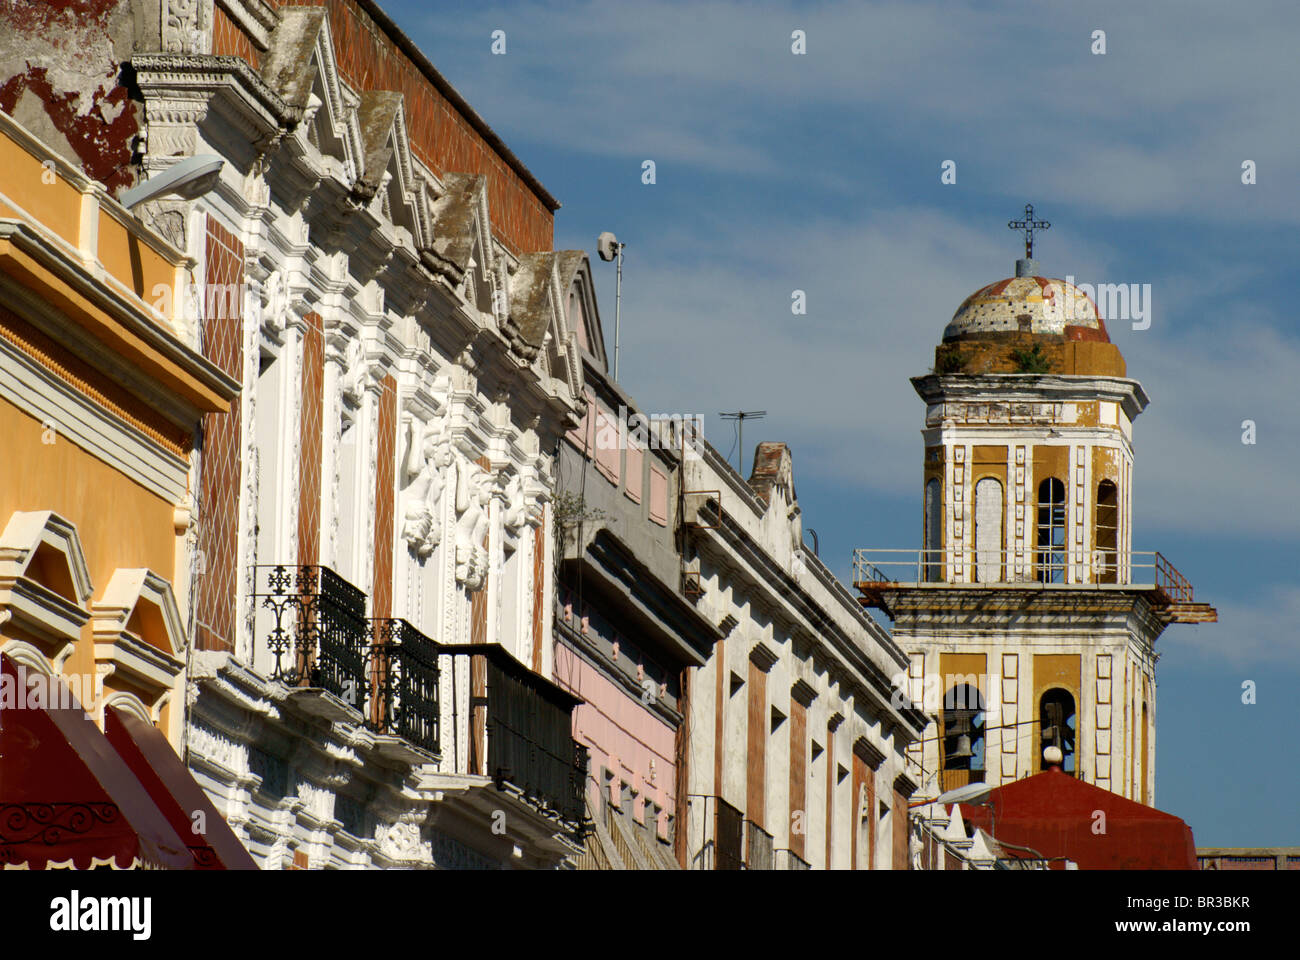 Spanische Kolonialarchitektur in der Stadt Puebla, Mexiko. Das historische Zentrum von Puebla ist ein UNESCO-Weltkulturerbe. Stockfoto